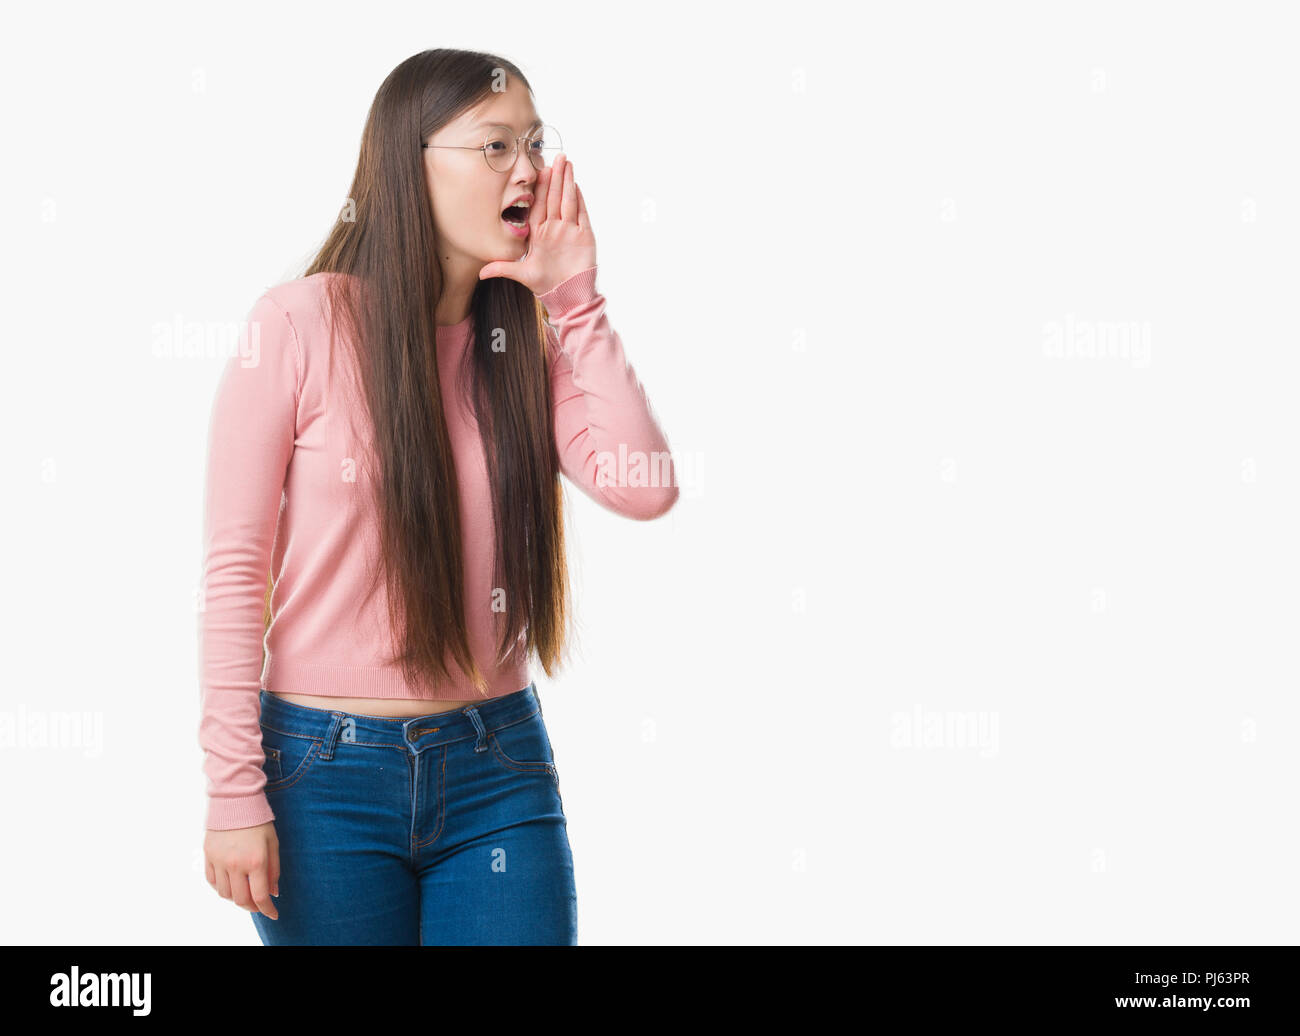 Junge chinesische Frau über isolierte Hintergrund Brille schreien und schreien laut mit Hand auf Mund-zu-Seite. Kommunikationskonzept. Stockfoto